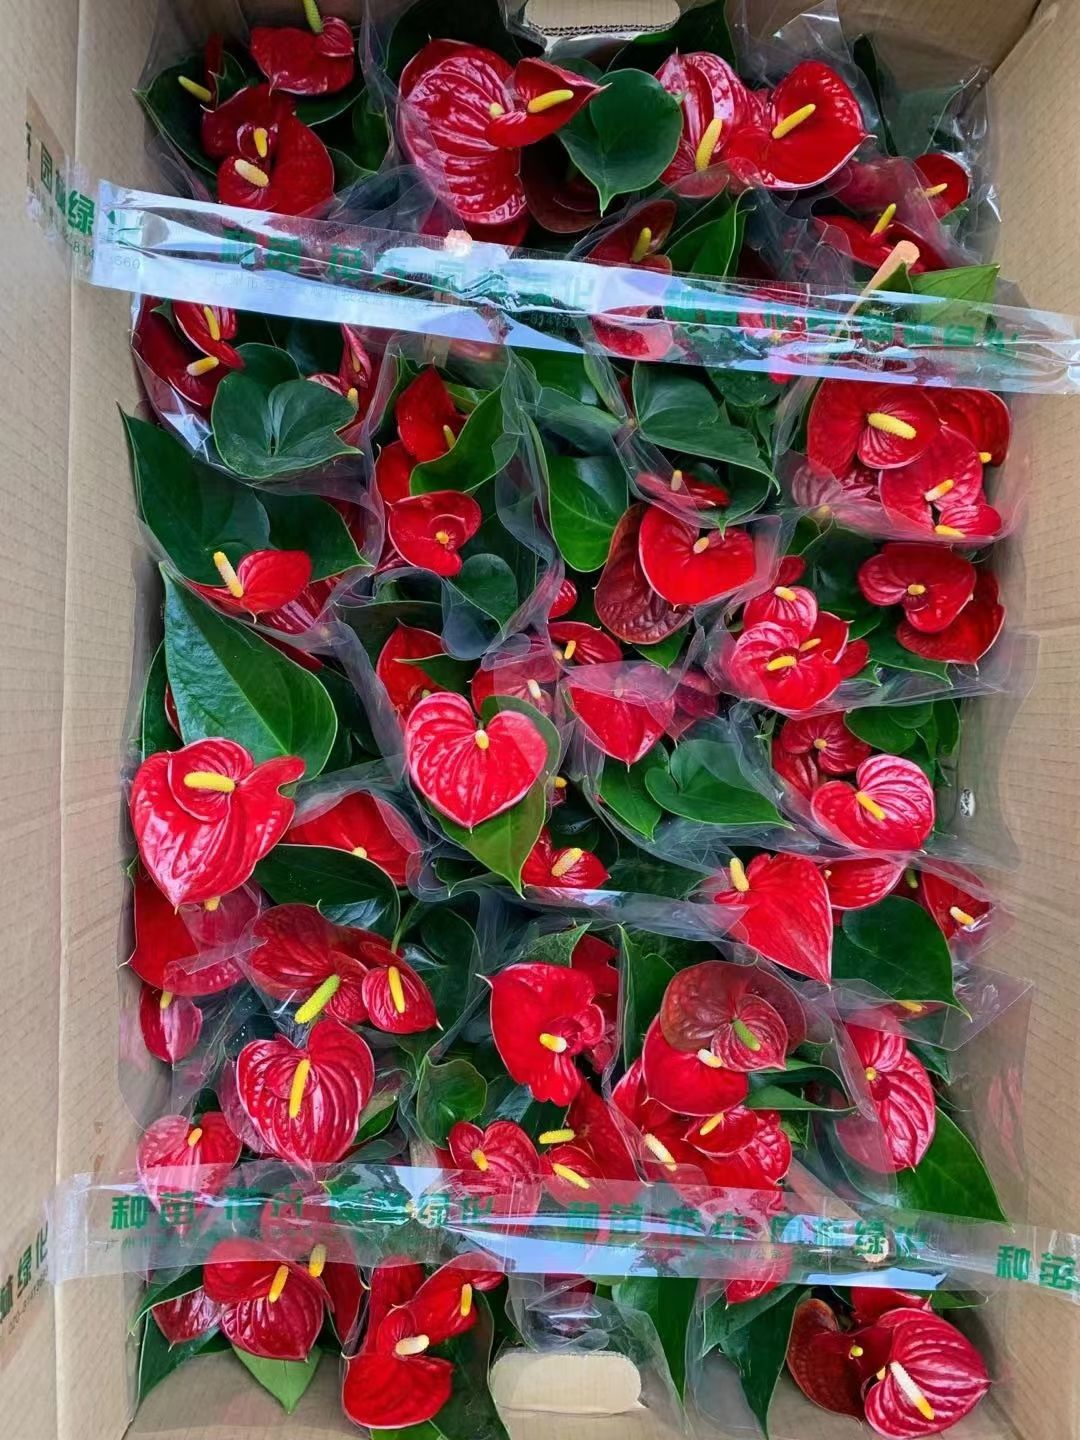 广州红掌红成功基地直销精品盆栽全国一件代发物美价廉产品好服务好。